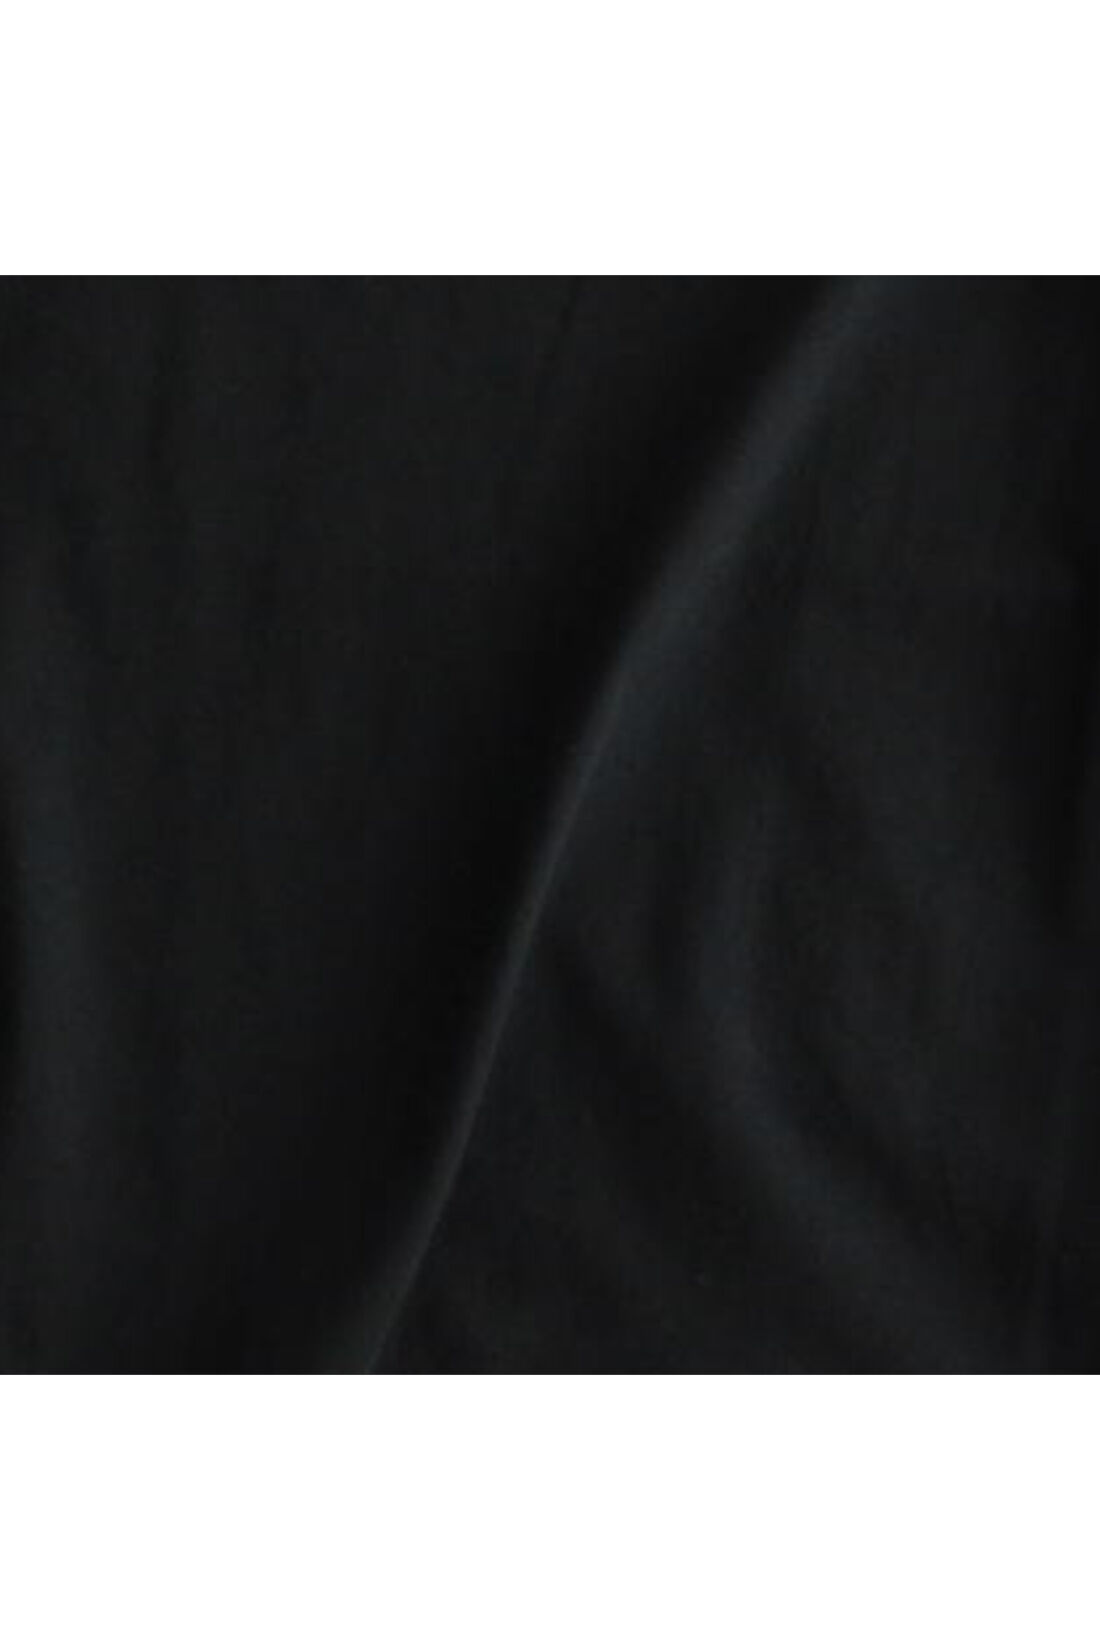 Real Stock|IEDIT[イディット]　USAコットンのキャップスリーブTシャツ〈ブラック〉|肌ざわりがやわらかく、表面がなめらかなUSAコットンの天じく素材。シックなニュアンスカラー。